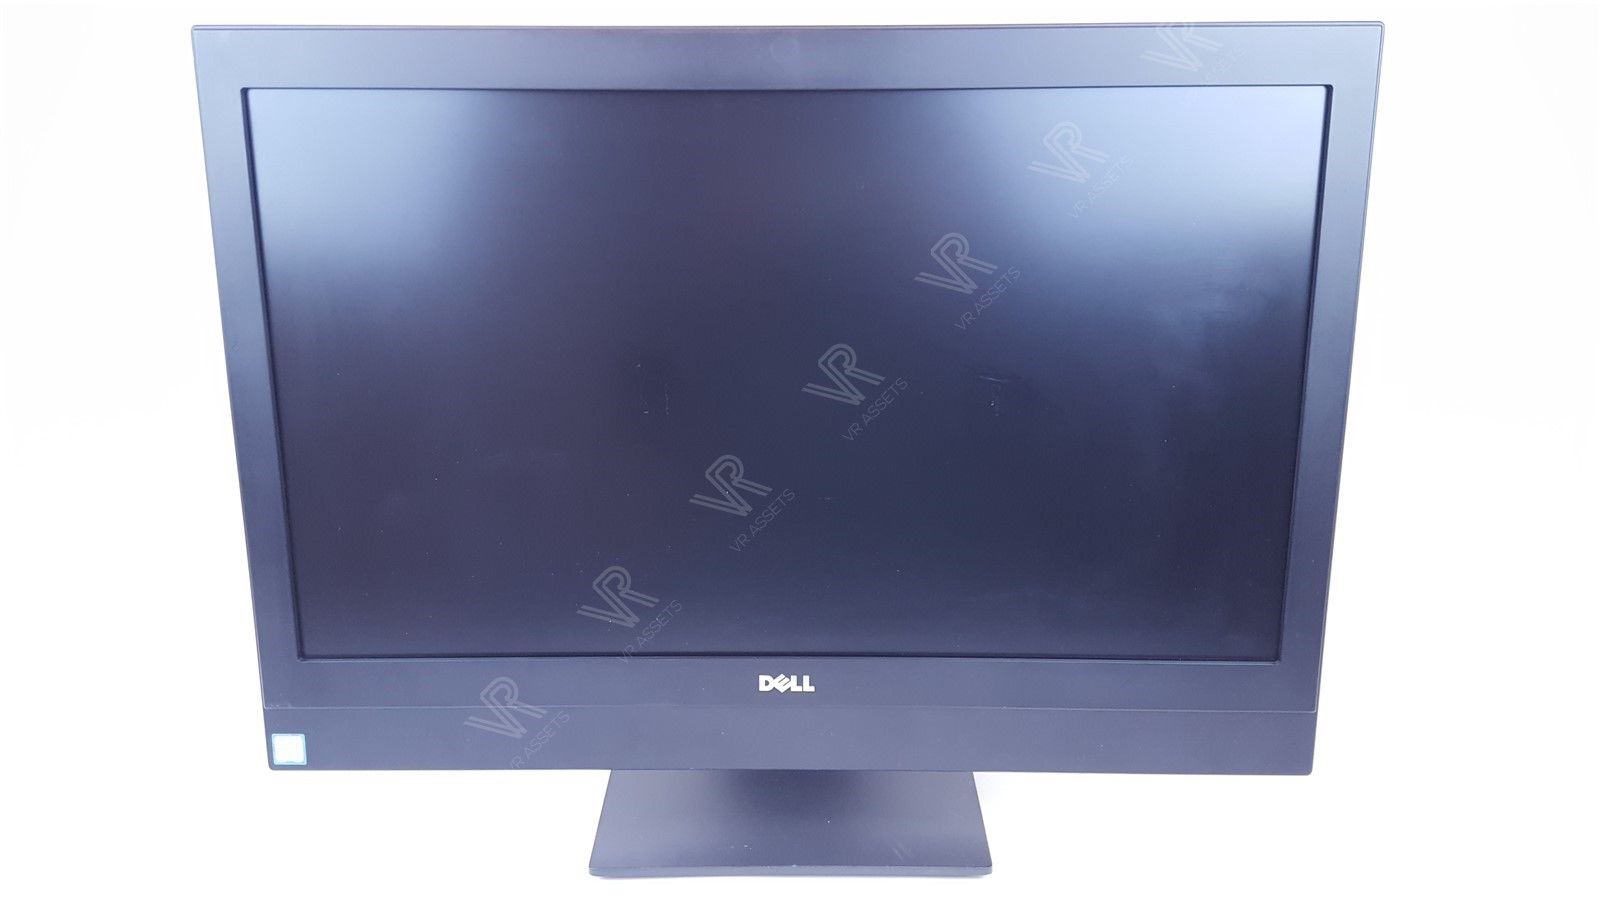 Dell Optiplex 7450 23.8" AIO All-in-One I5-6500 3.2GHz 4GB 1Tb Windows 10 Pro PC